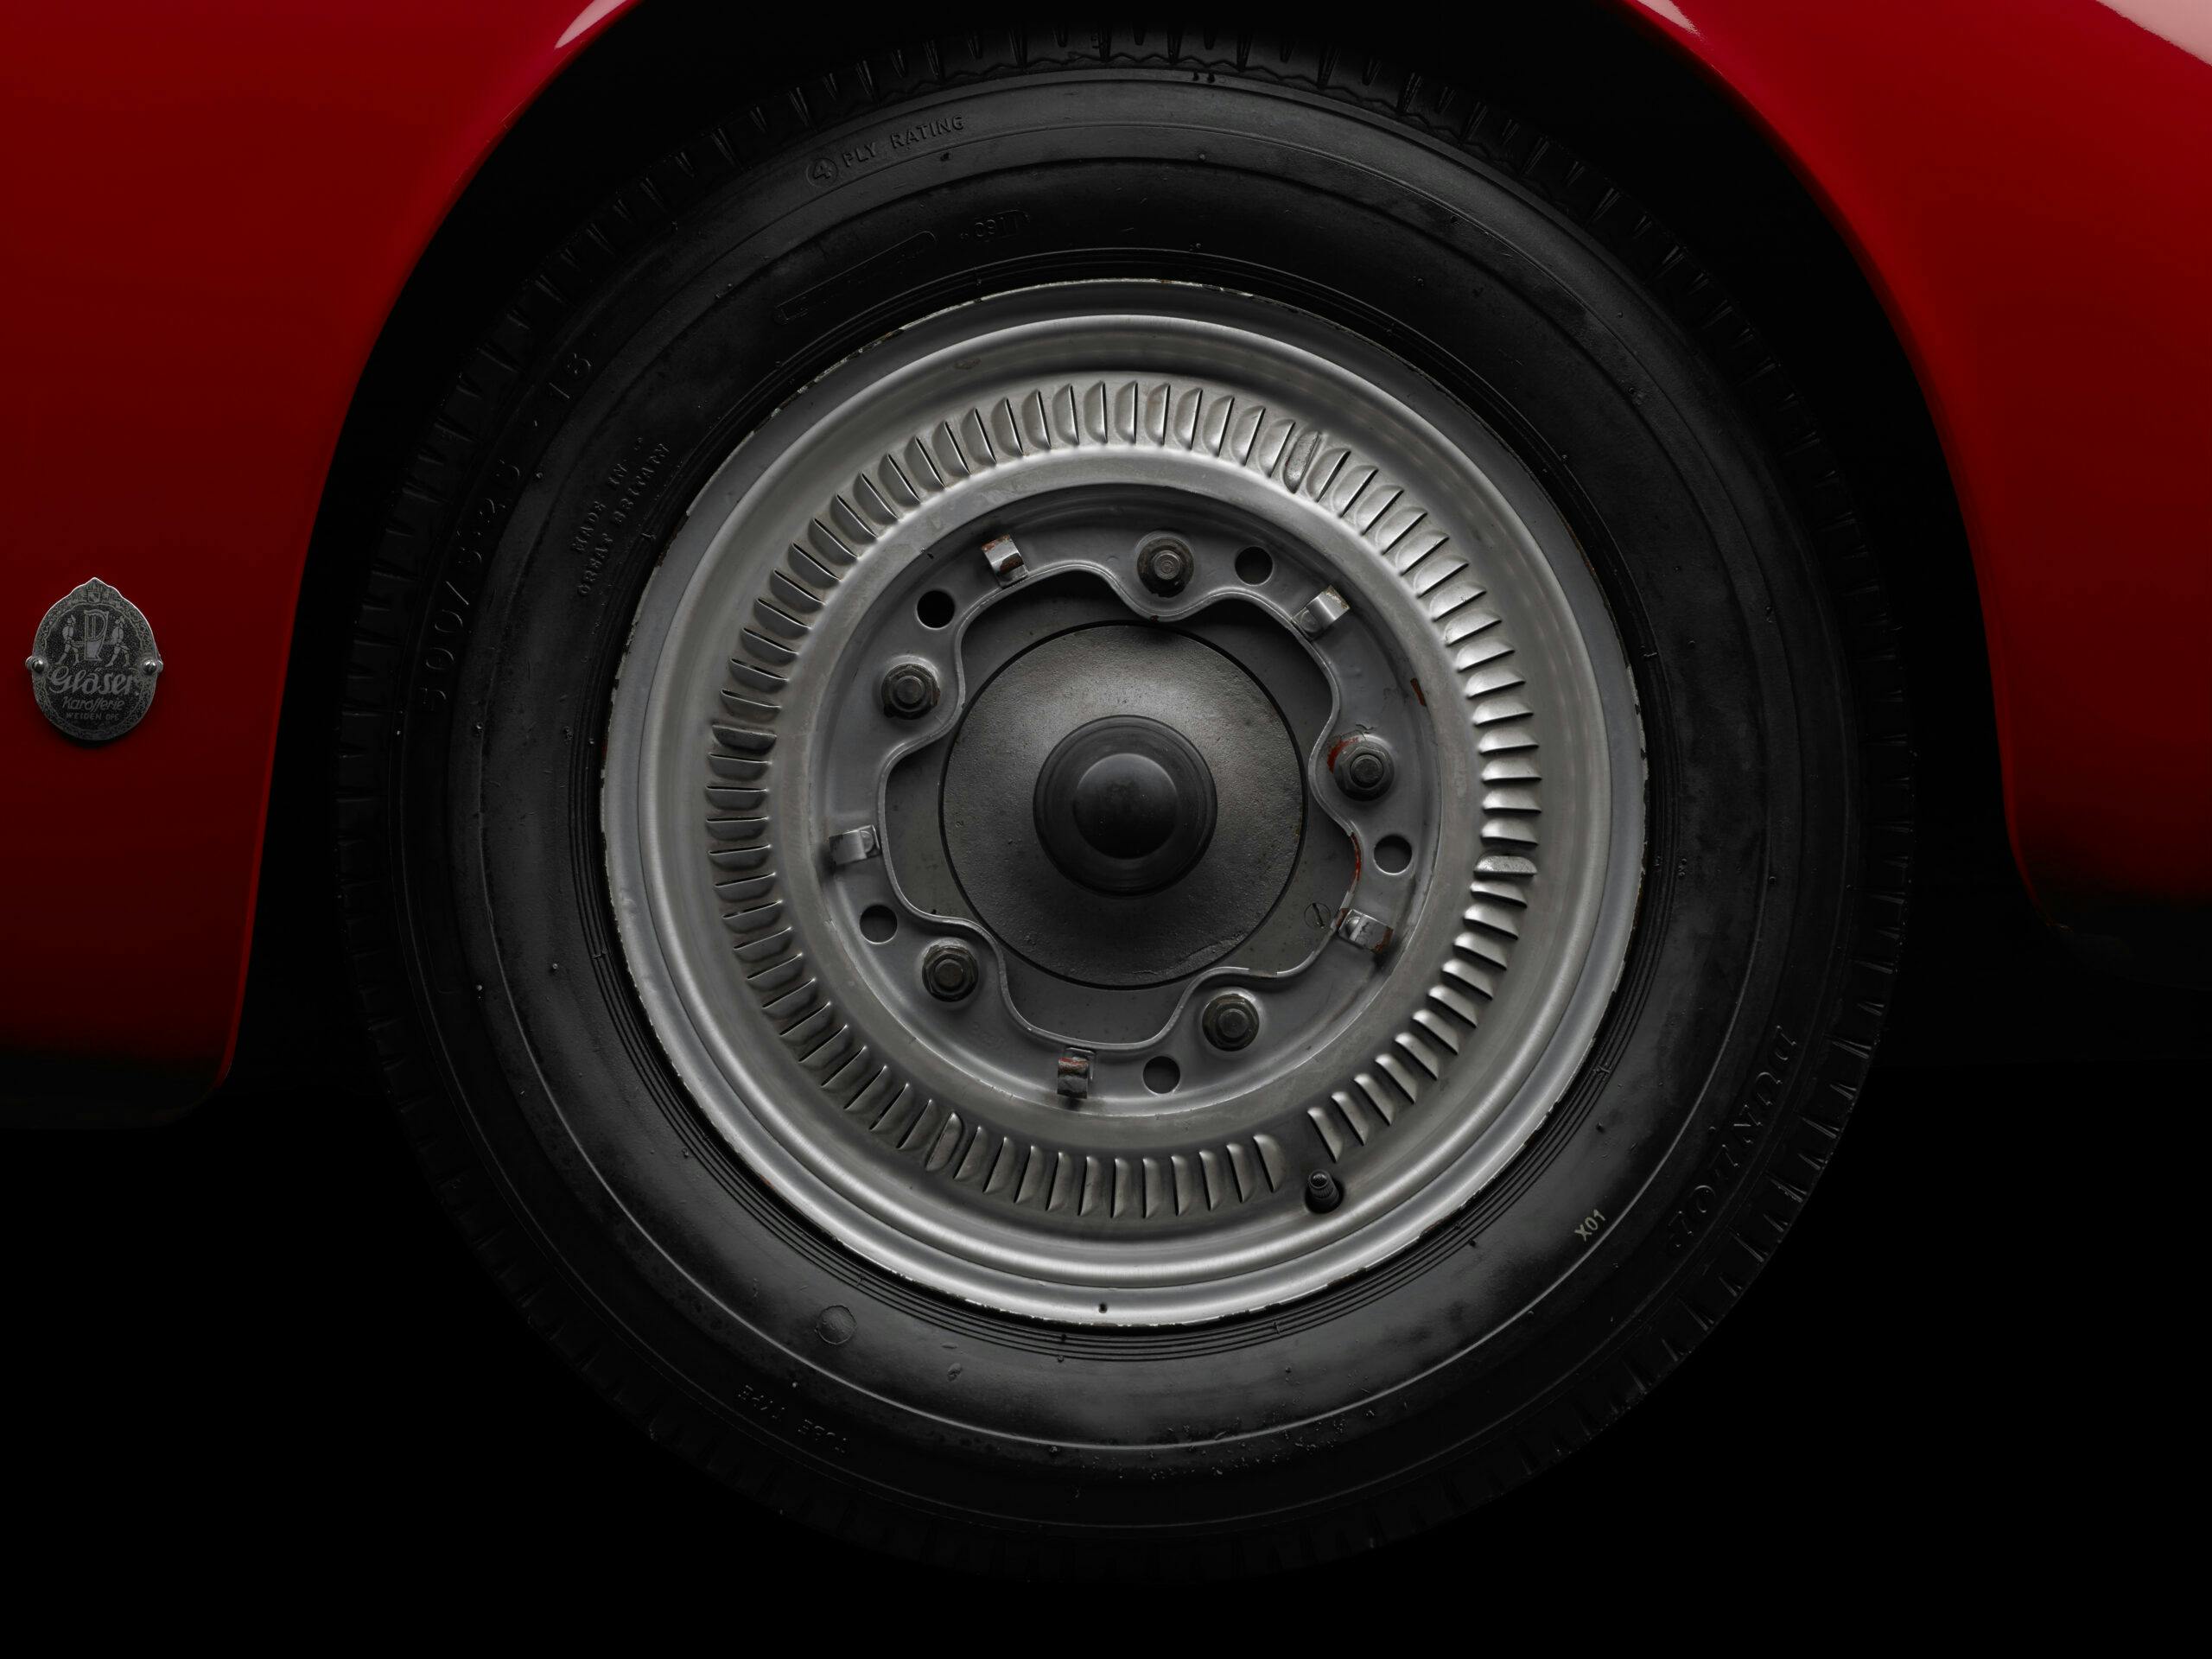 HVA 1952-Porsche-356-America-Roadster wheel tire National Historic Vehicle Register